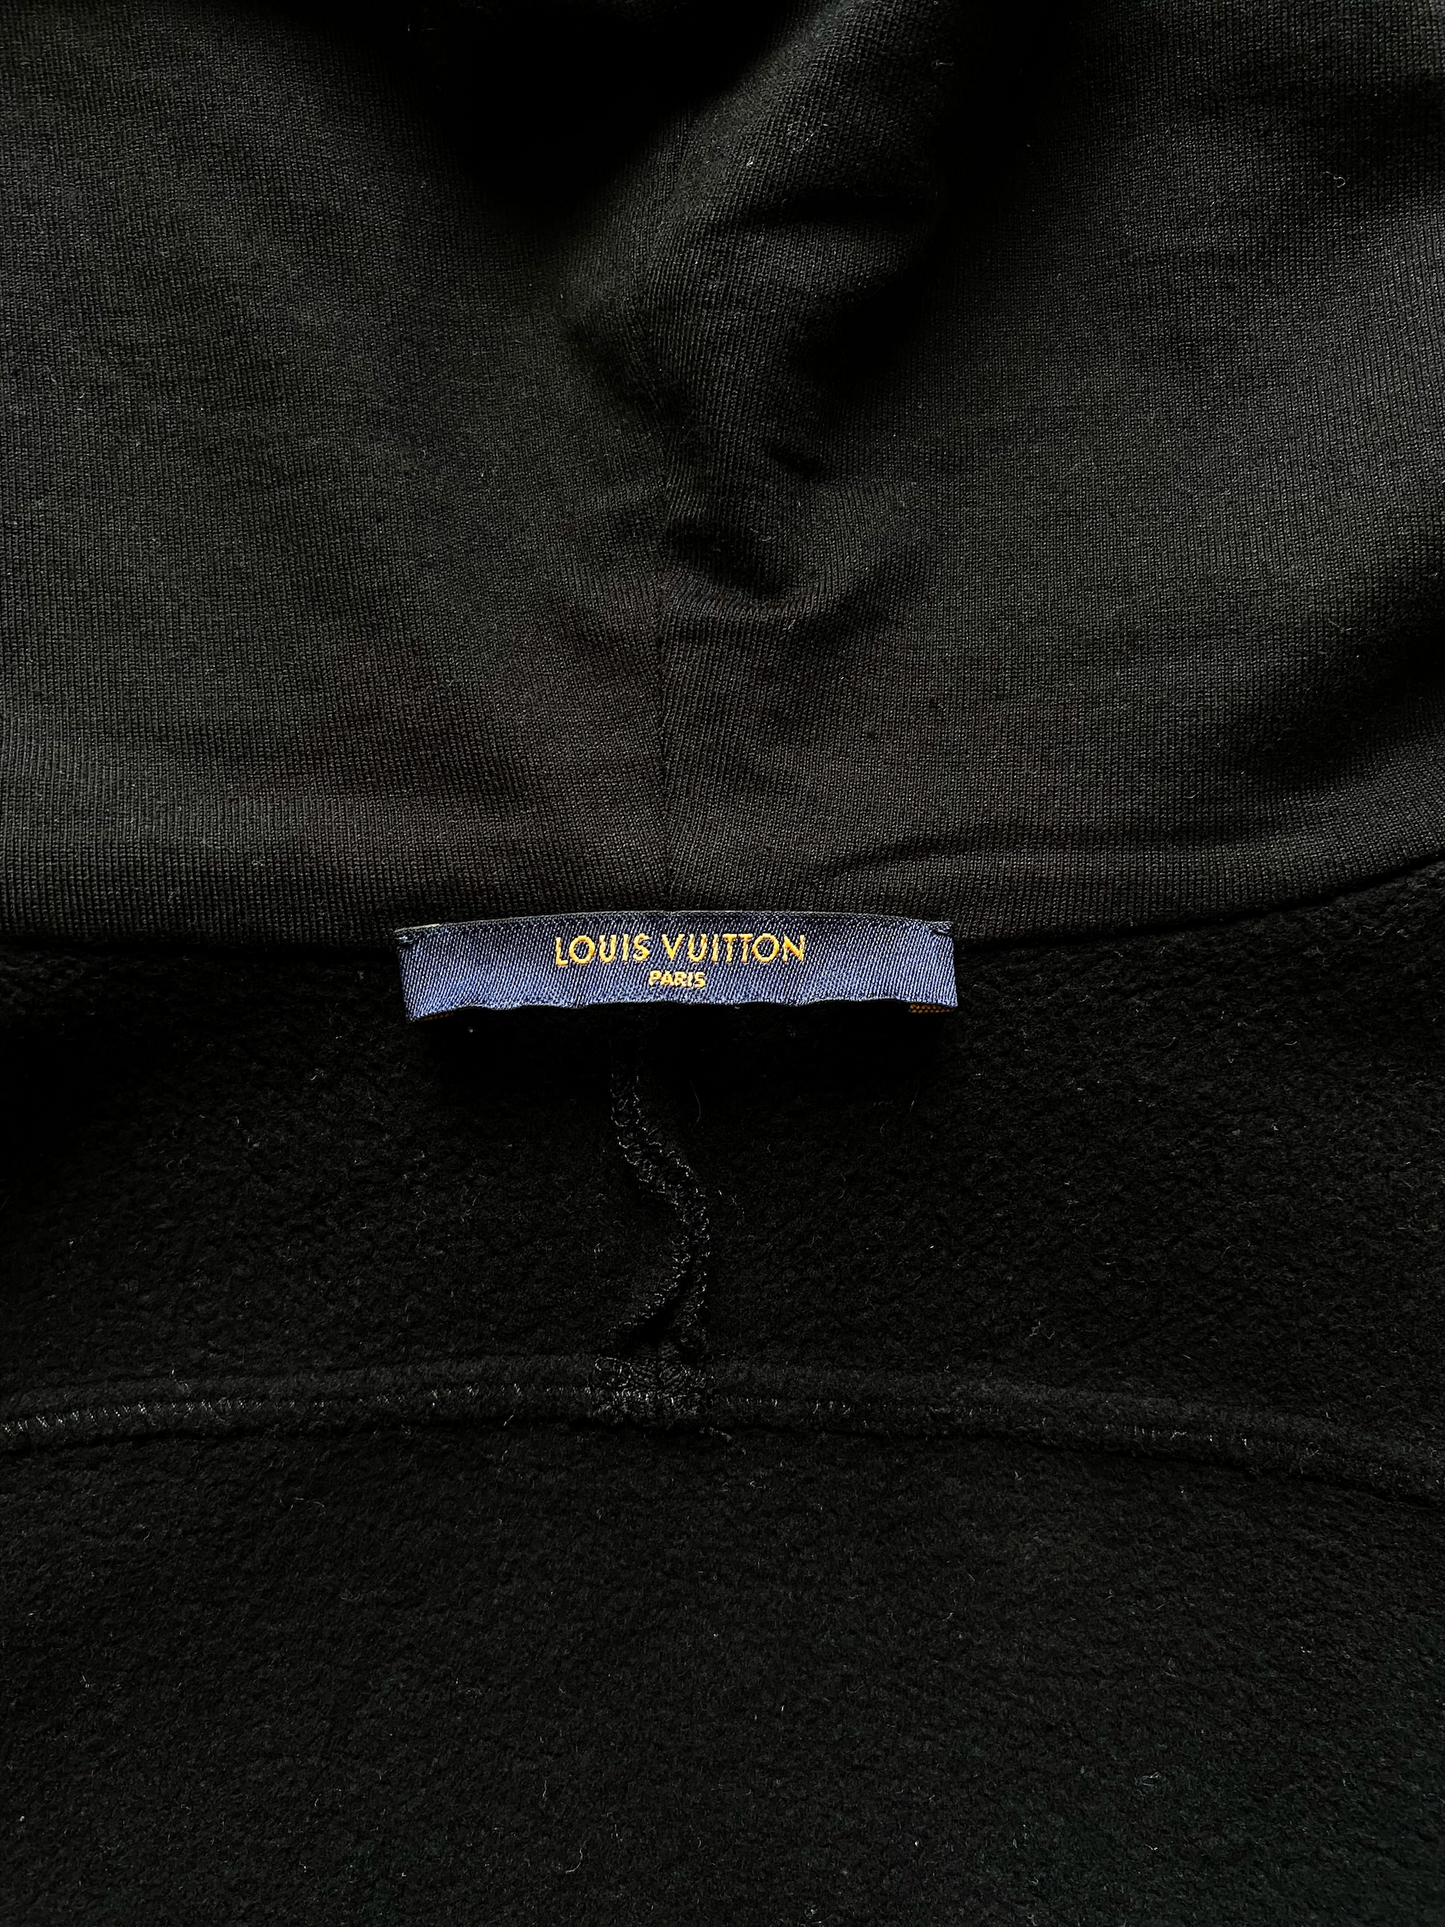 Lv Black Sweatshirt - For Sale on 1stDibs